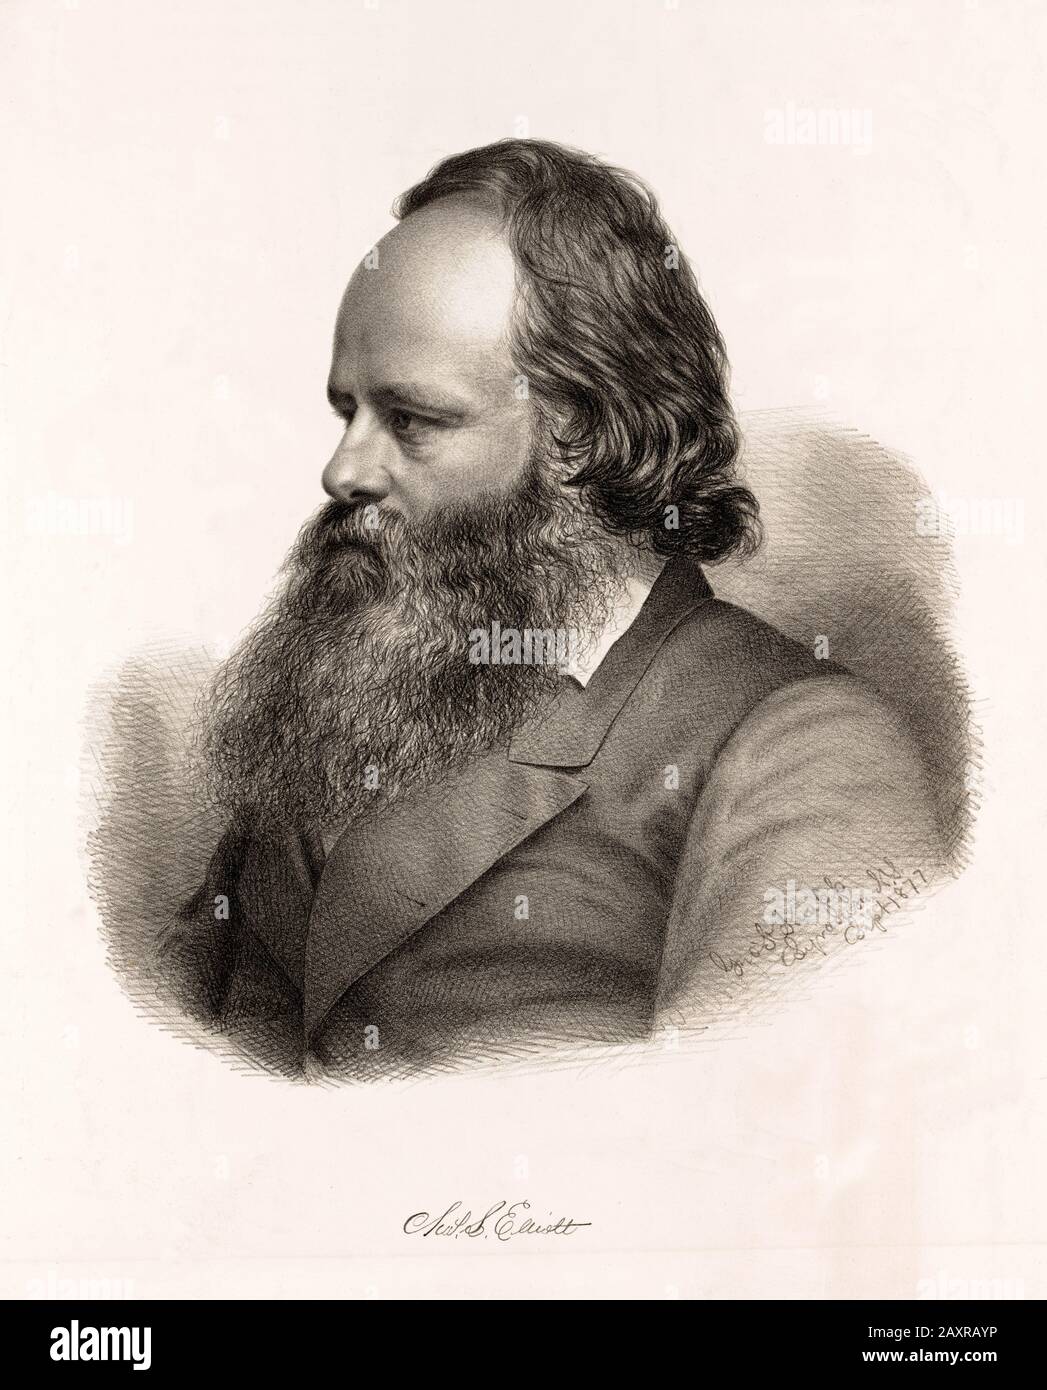 1877 , NEW YORK , USA : il pittore americano ALEXANDER H. WYANT ( 1836 - 1892 ), dal daguerreotype originale. Ritratto inciso da George Kasson Knapp ( 1833 - 1910 ). - ARTE - ARTI VISIVE - ARTE - PORTRAIT - ritratti - STORIA - FOTO STORICHE - barba - barba - barba - incisione - incisione --- Archivio GBB Foto Stock